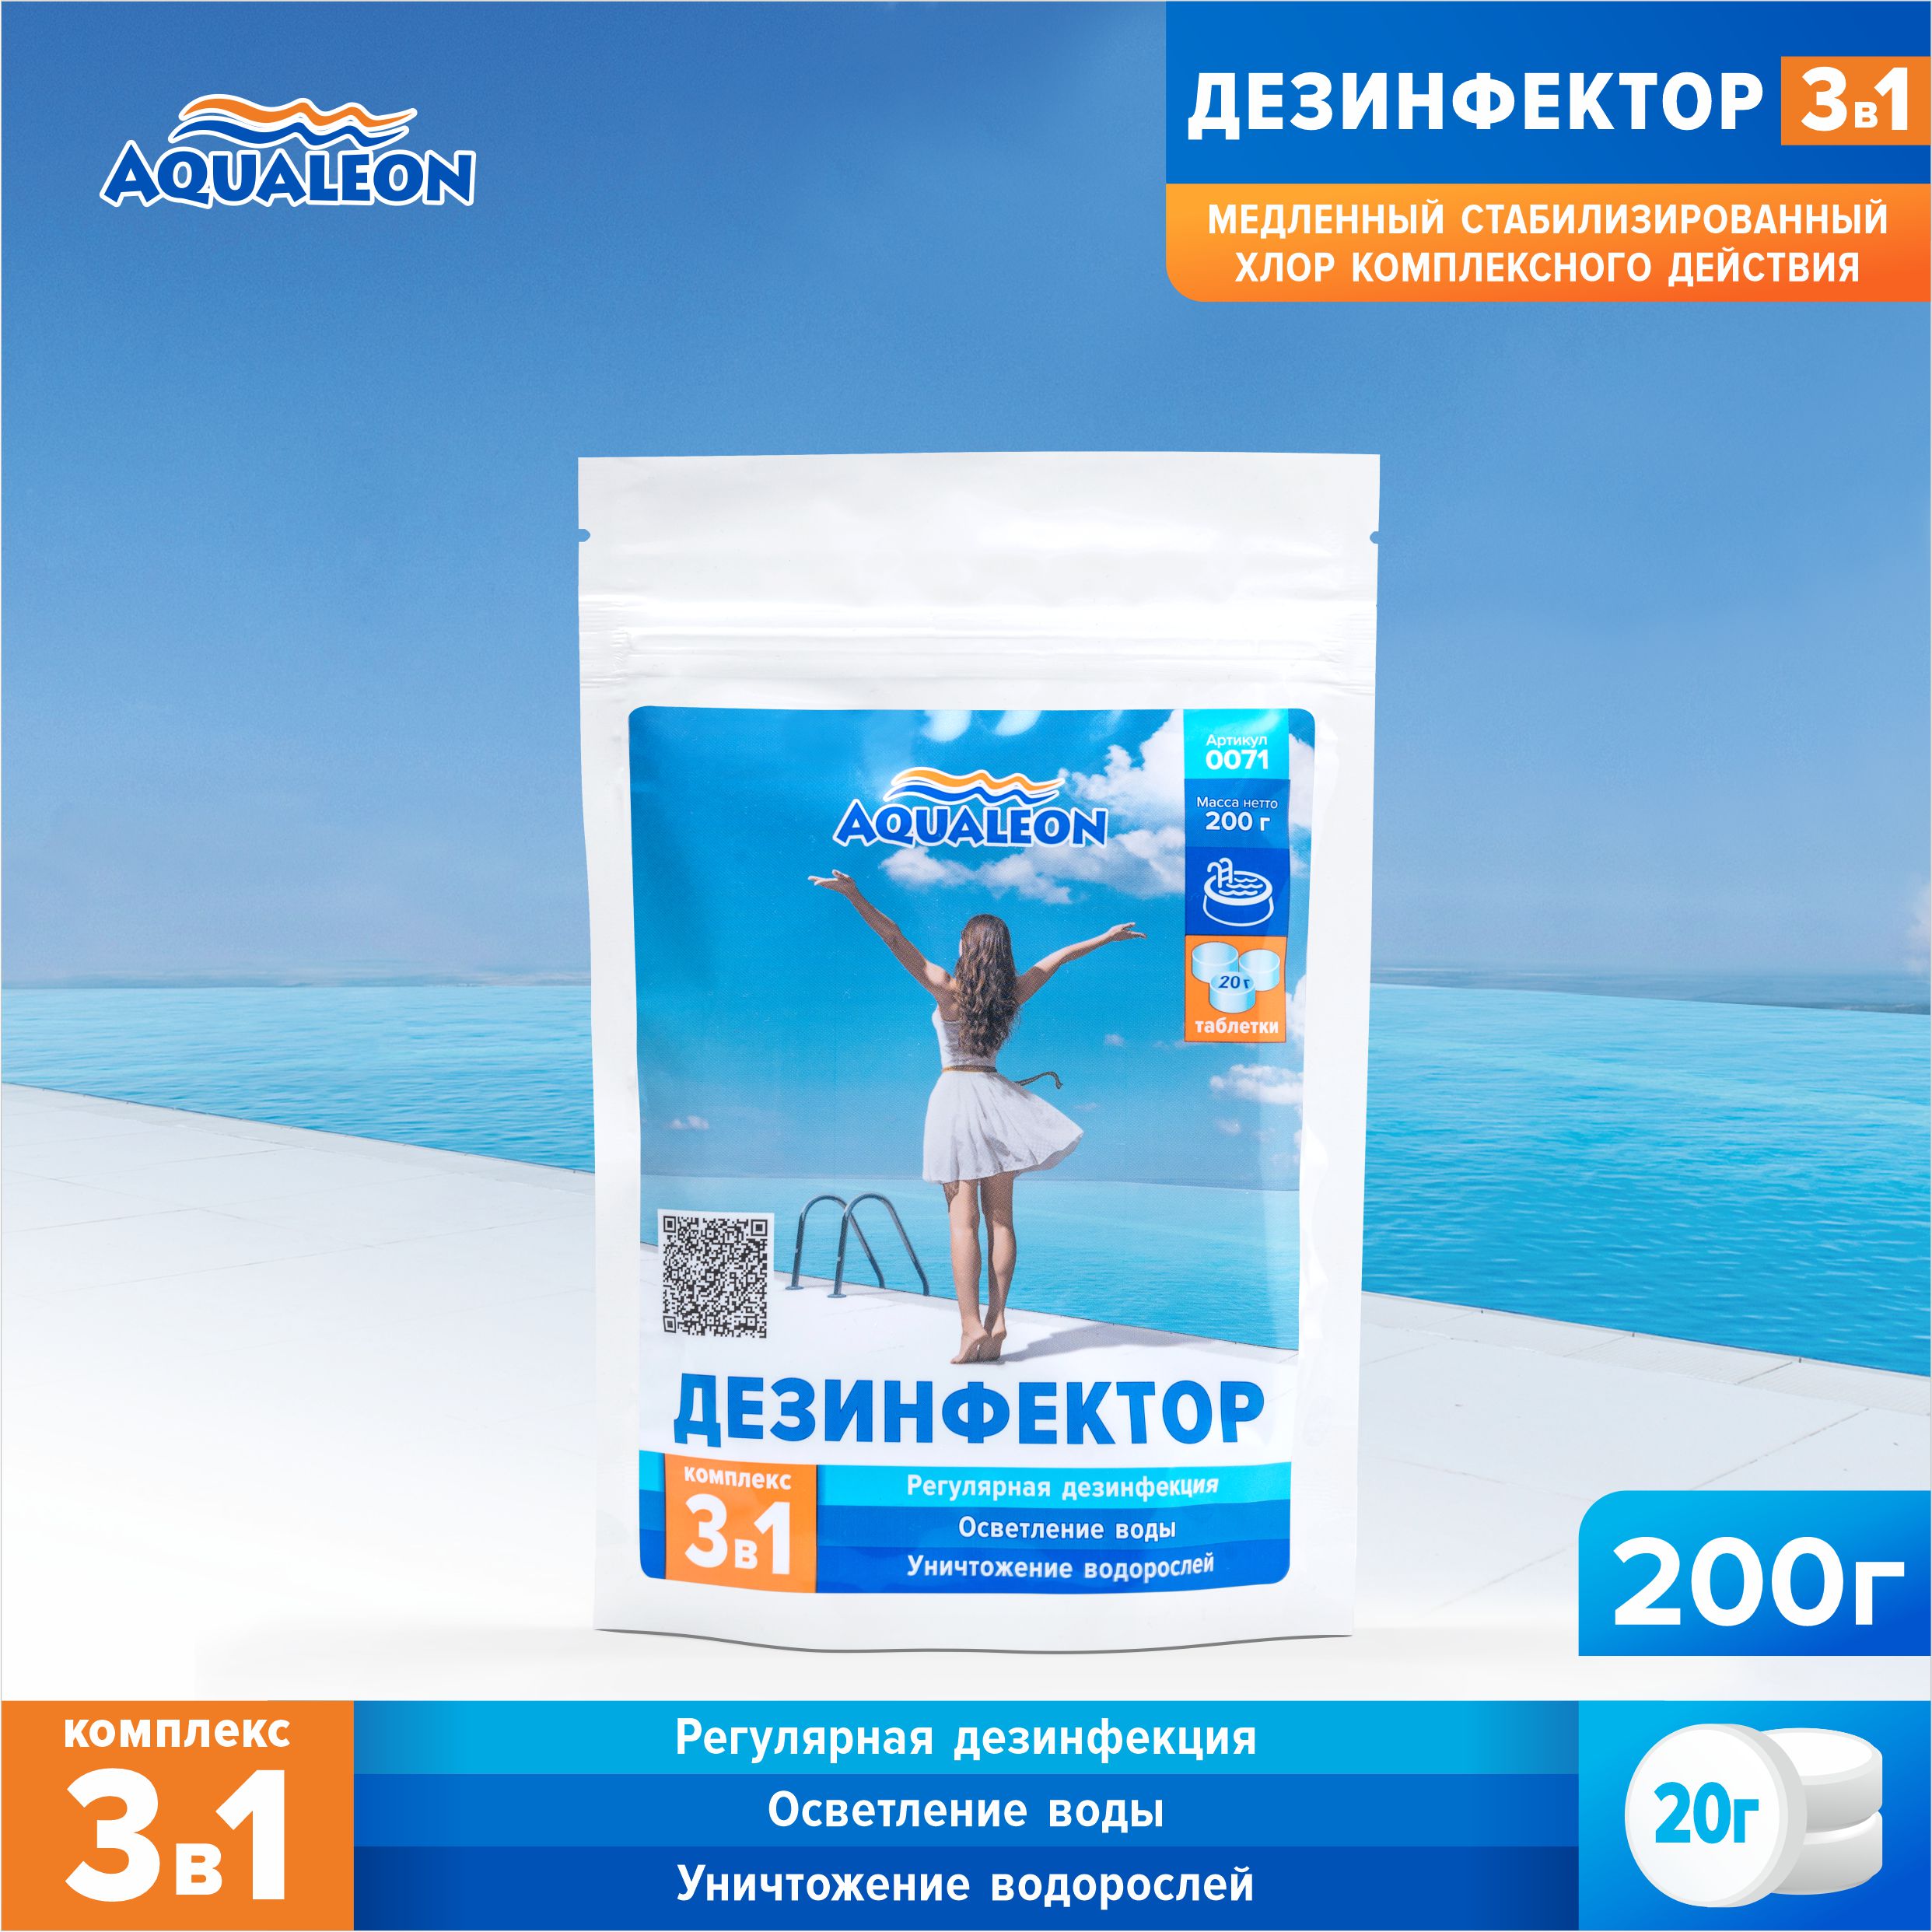 Медленный хлор для бассейна (МСХ КД) Aqualeon комплексный таблетки по 20 гр., пакет 200гр.